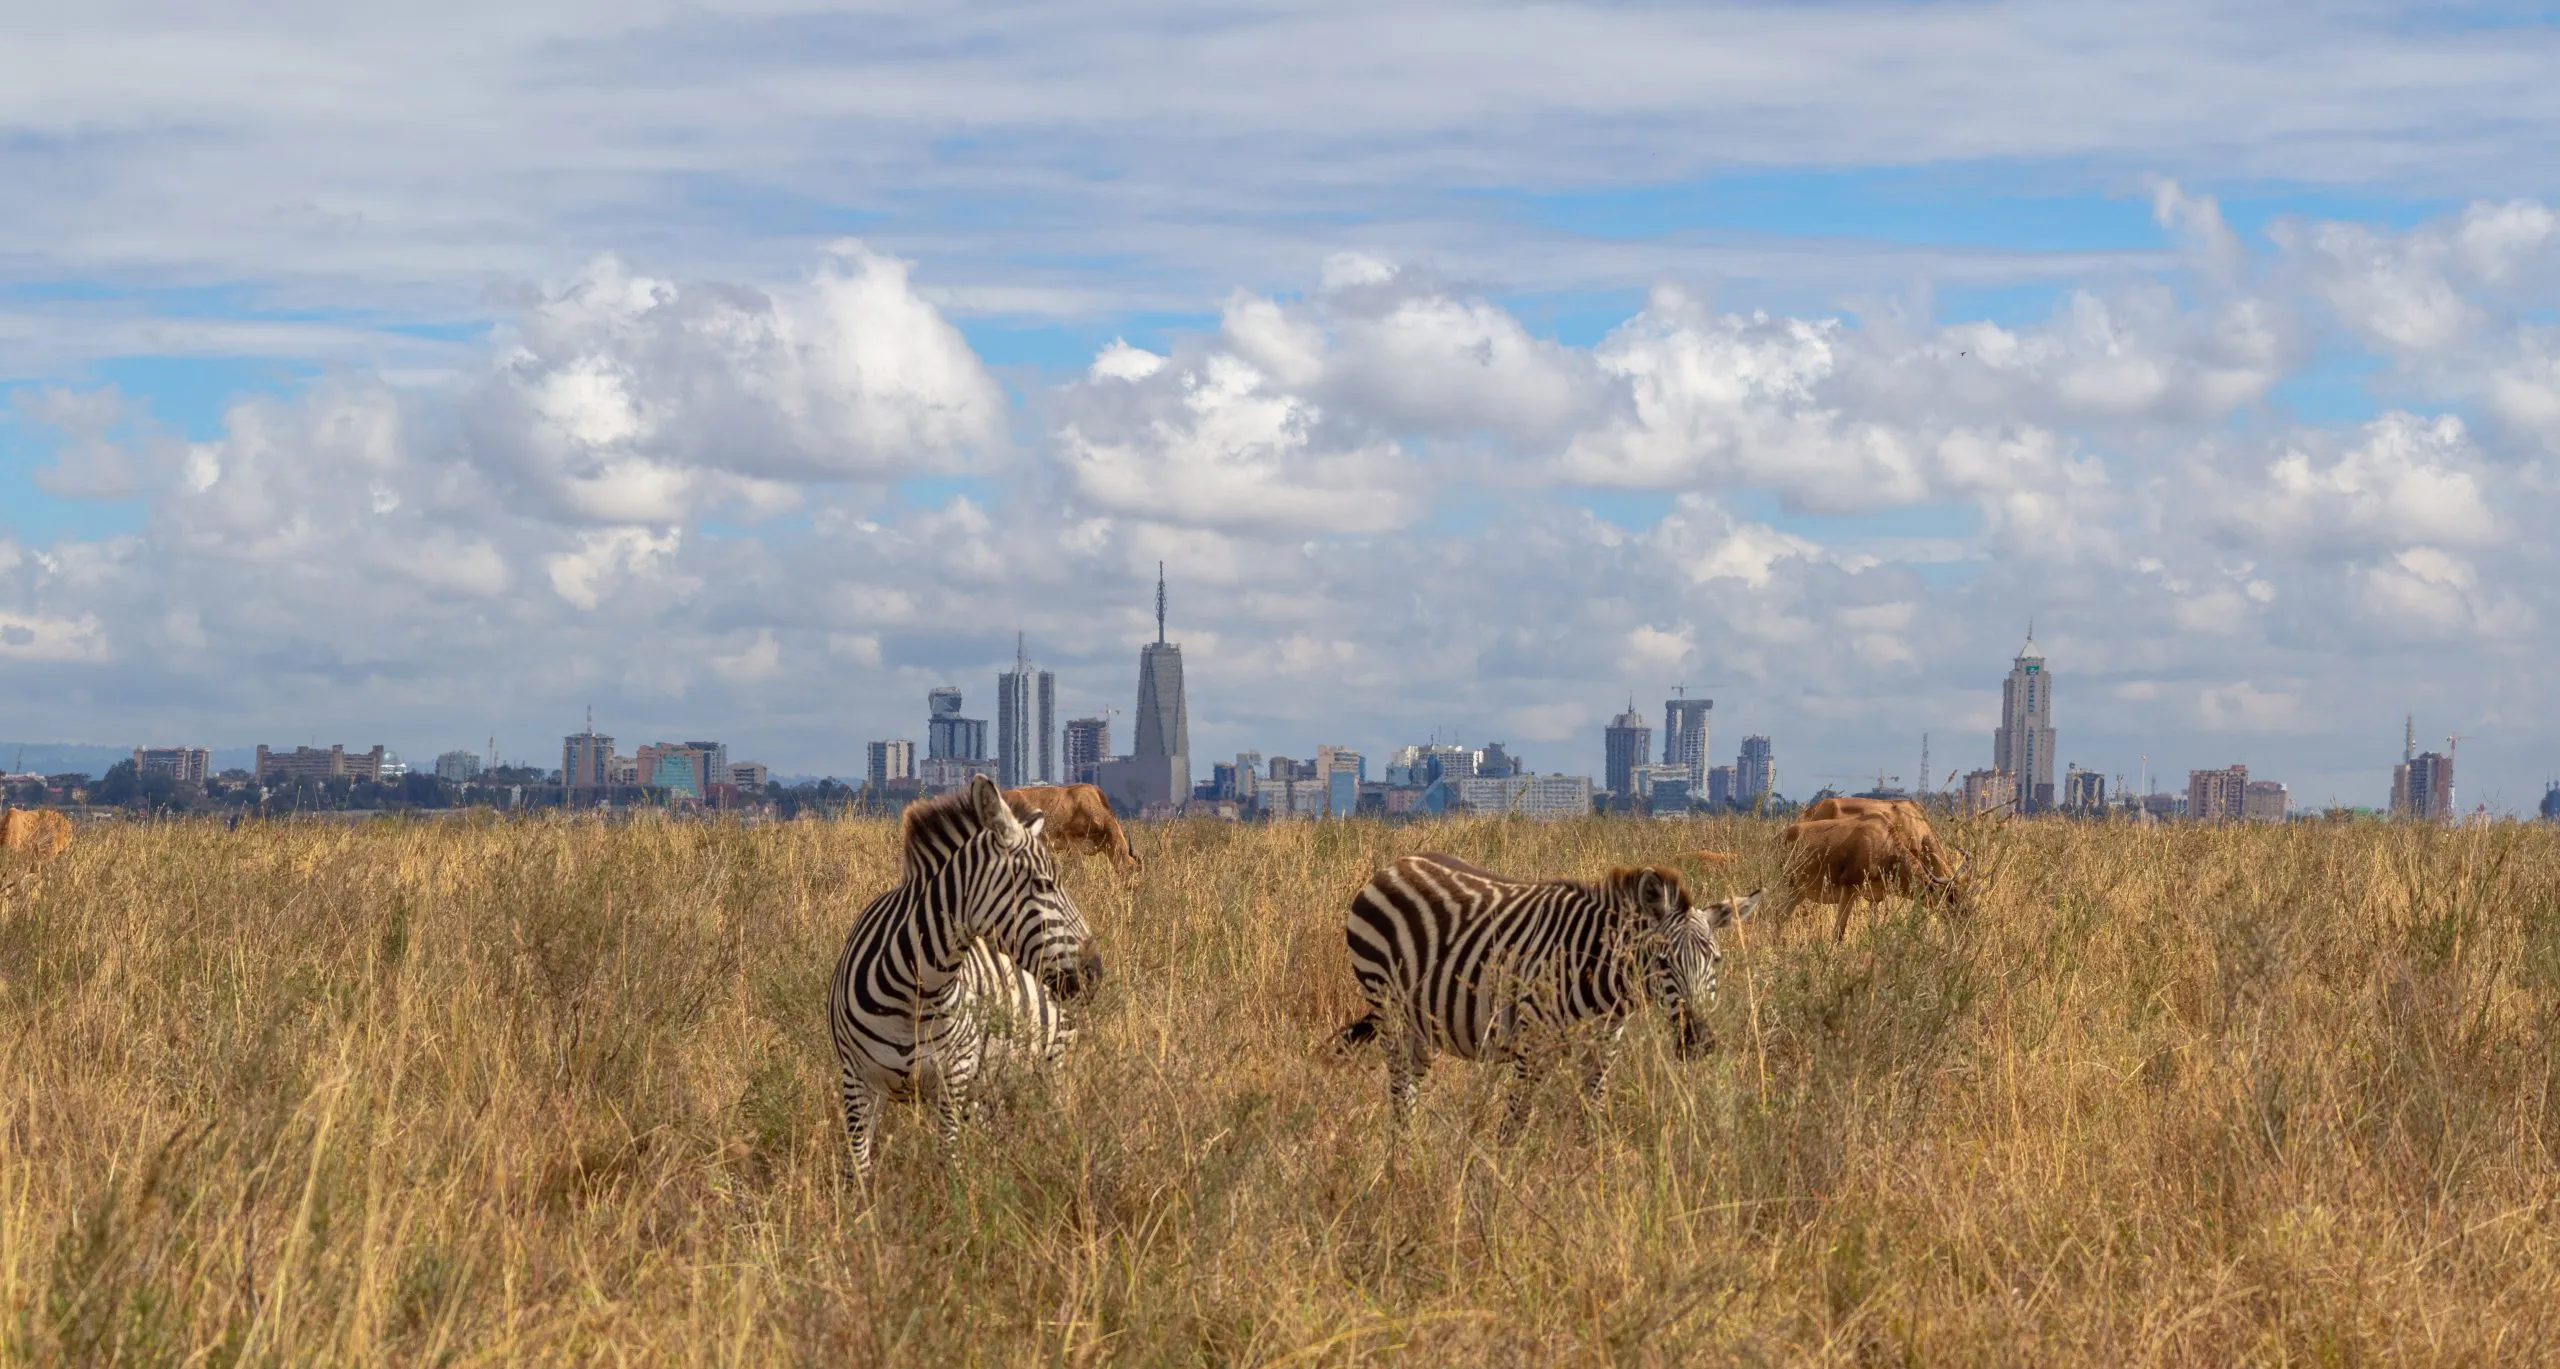 wild en skyline van de stad, savannedieren eten gras in Nairobi National Park, Afrika, met de skyline van de wolkenkrabbers van Nairobi op de achtergrond